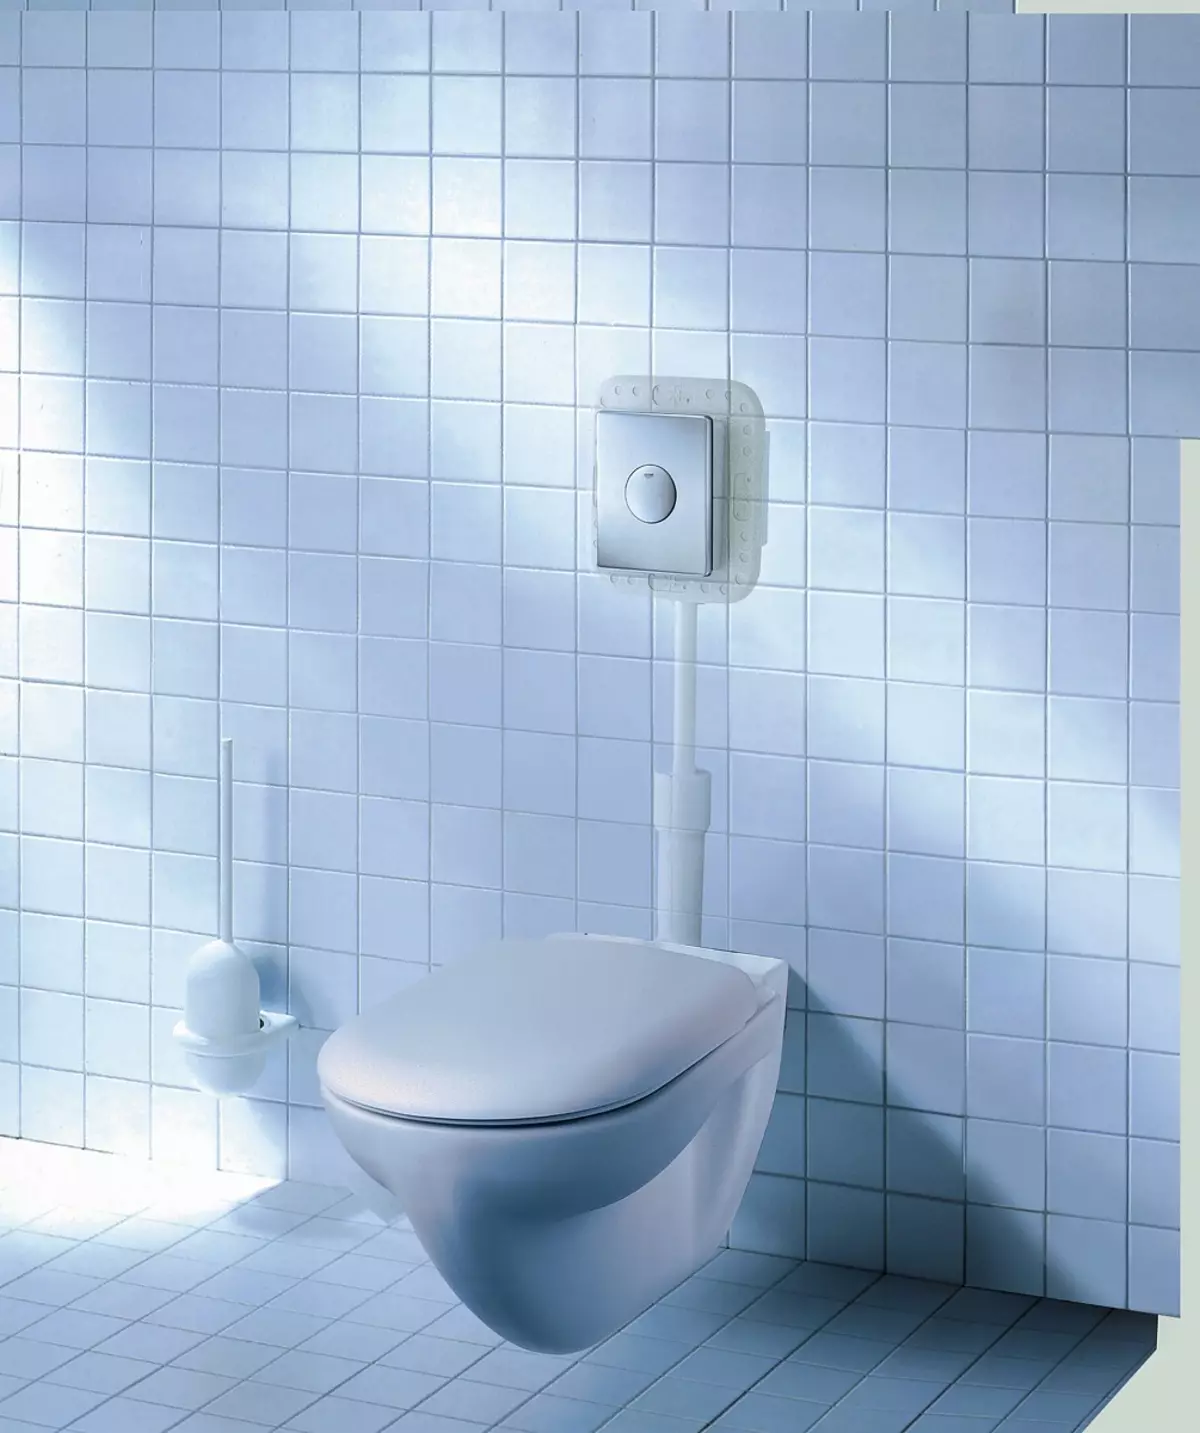 Грохе тоалети: Карактеристике суспендованих беаде и модела на отвореном, бау керамички и евро керамички оправни преглед, солидо и рапид сл инсталације, критике купаца 10552_19